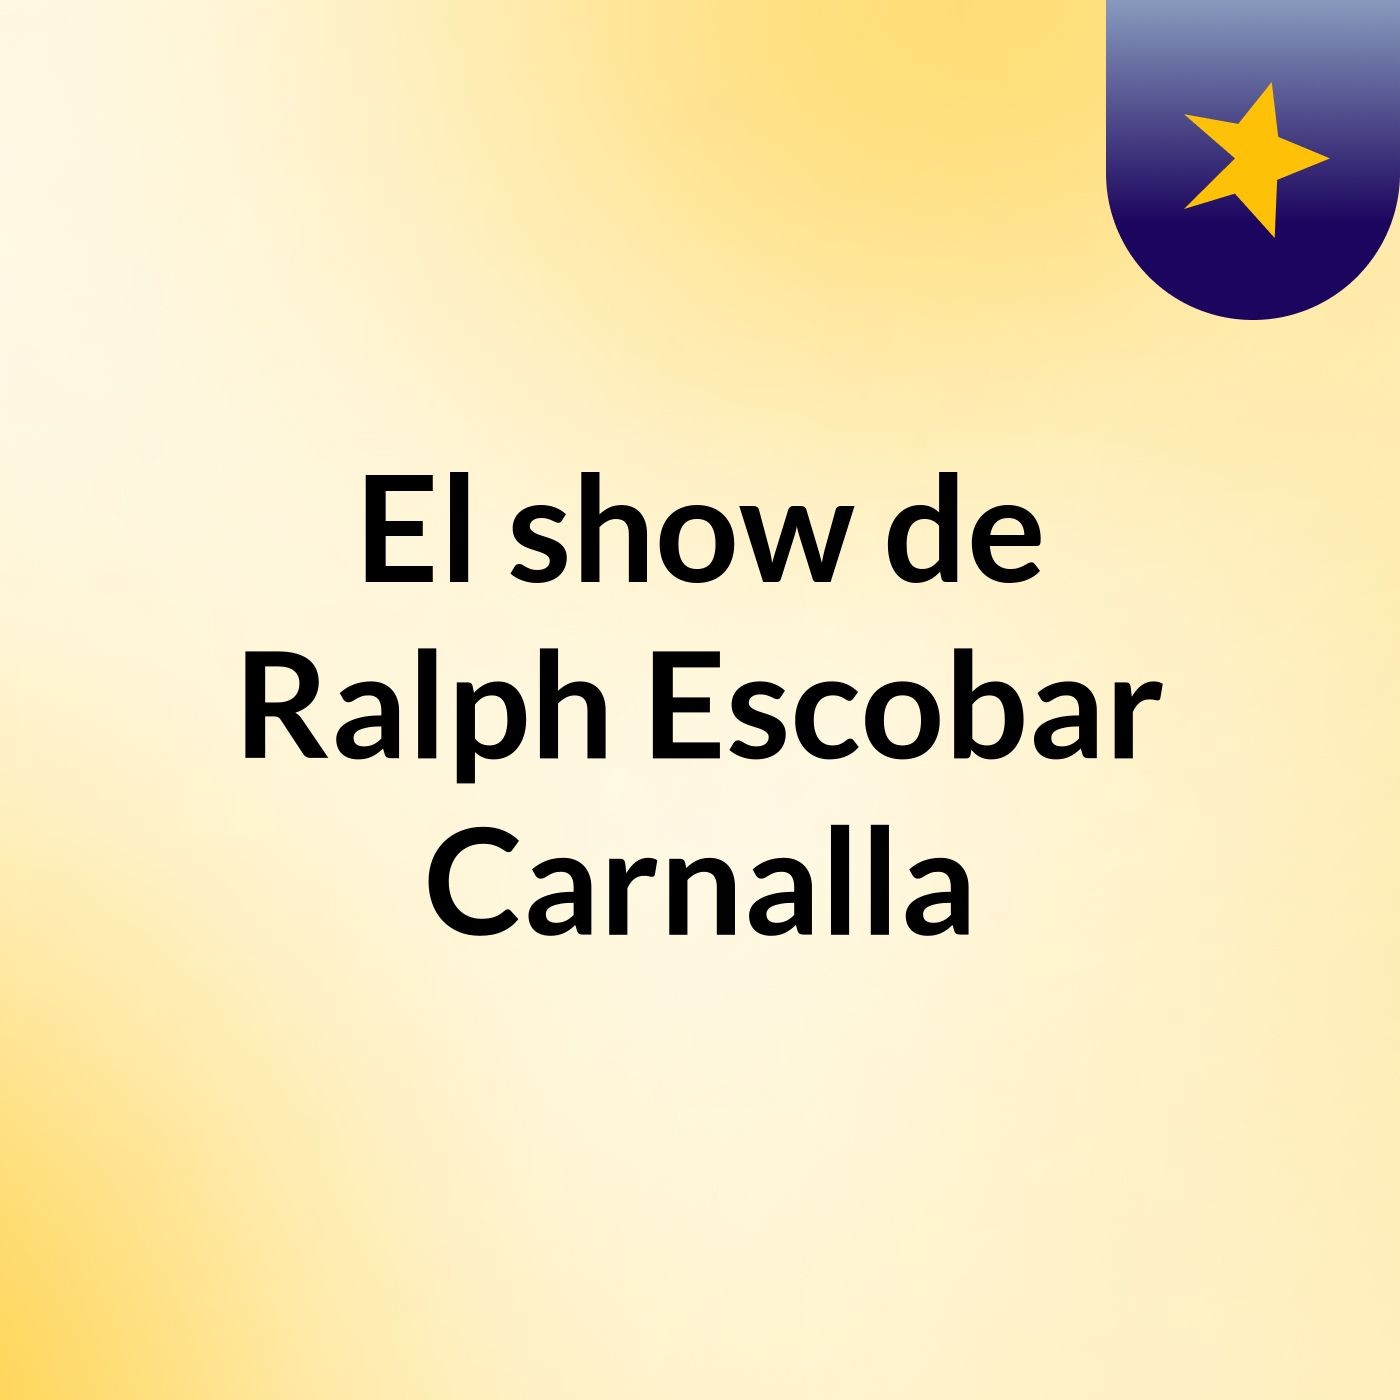 El show de Ralph Escobar Carnalla